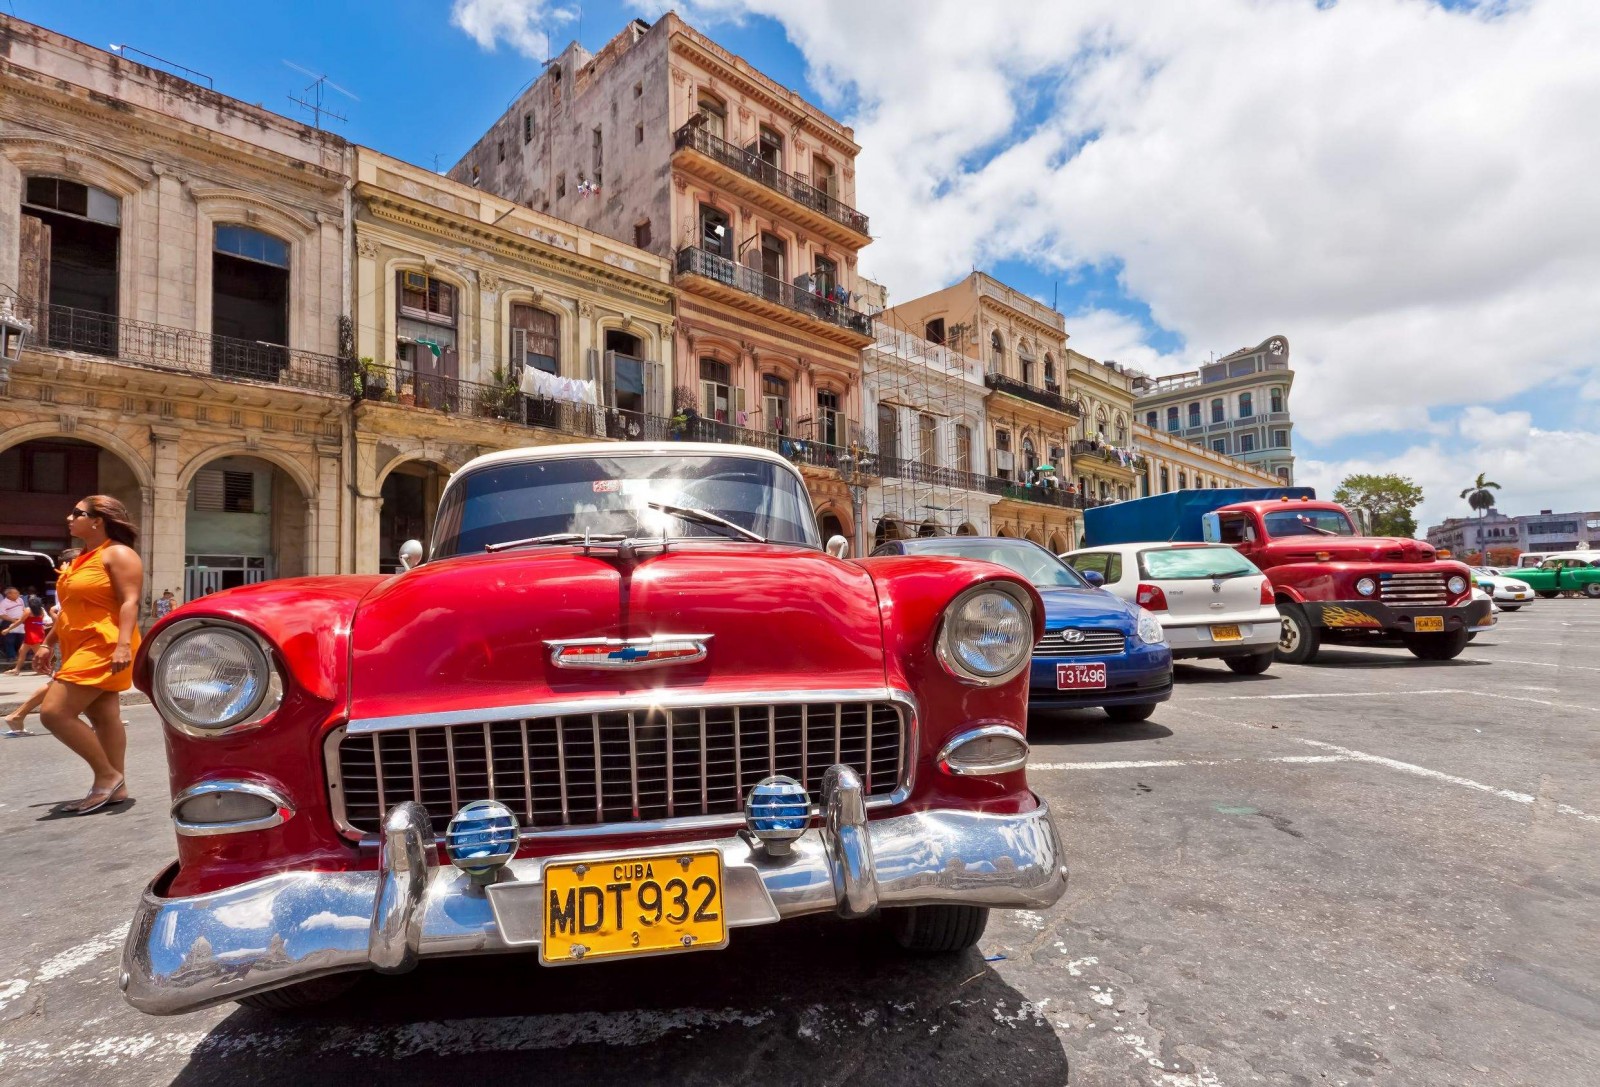 Cuba cải cách, doanh nghiệp Việt có hưởng lợi?